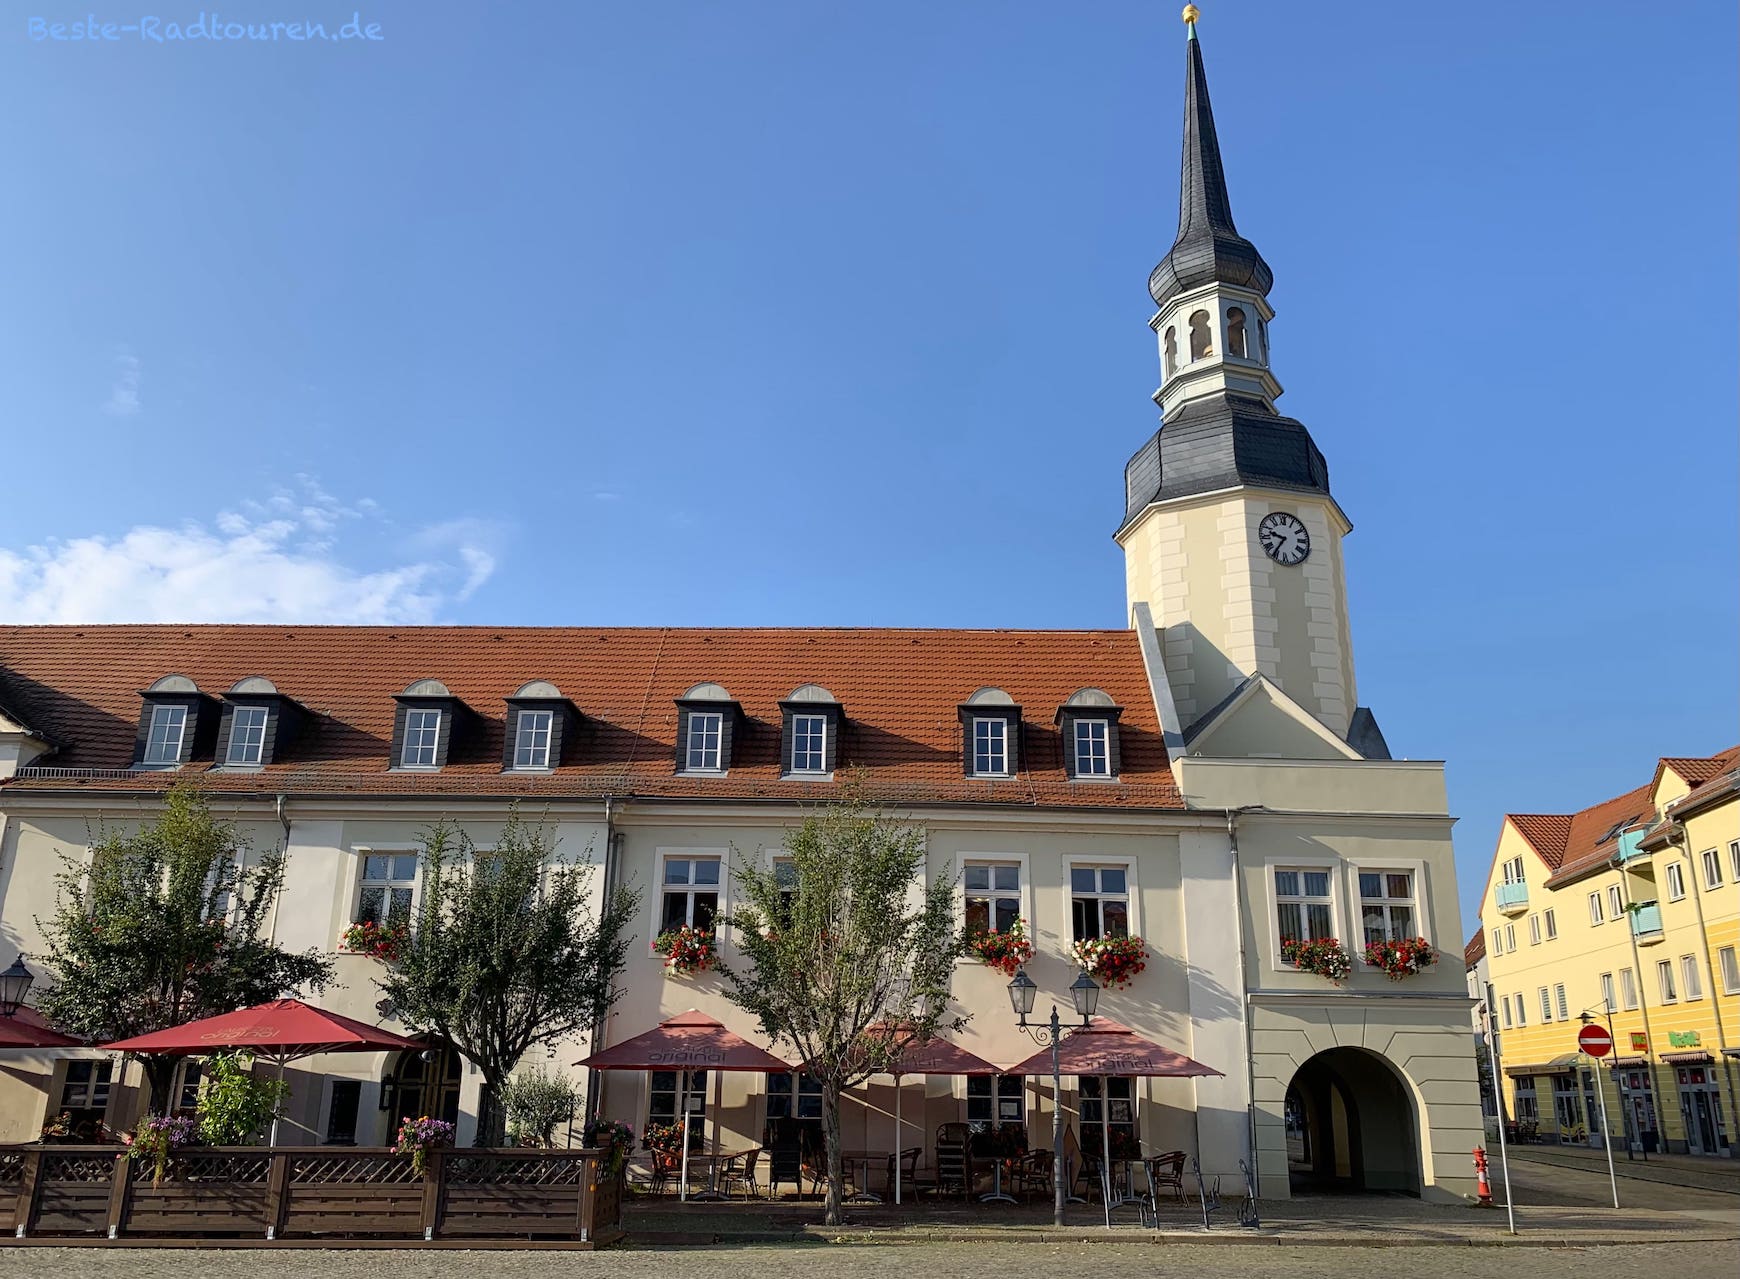 Foto vom Spree-Radweg im Zentrum von Spremberg: Rathaus am Marktplatz